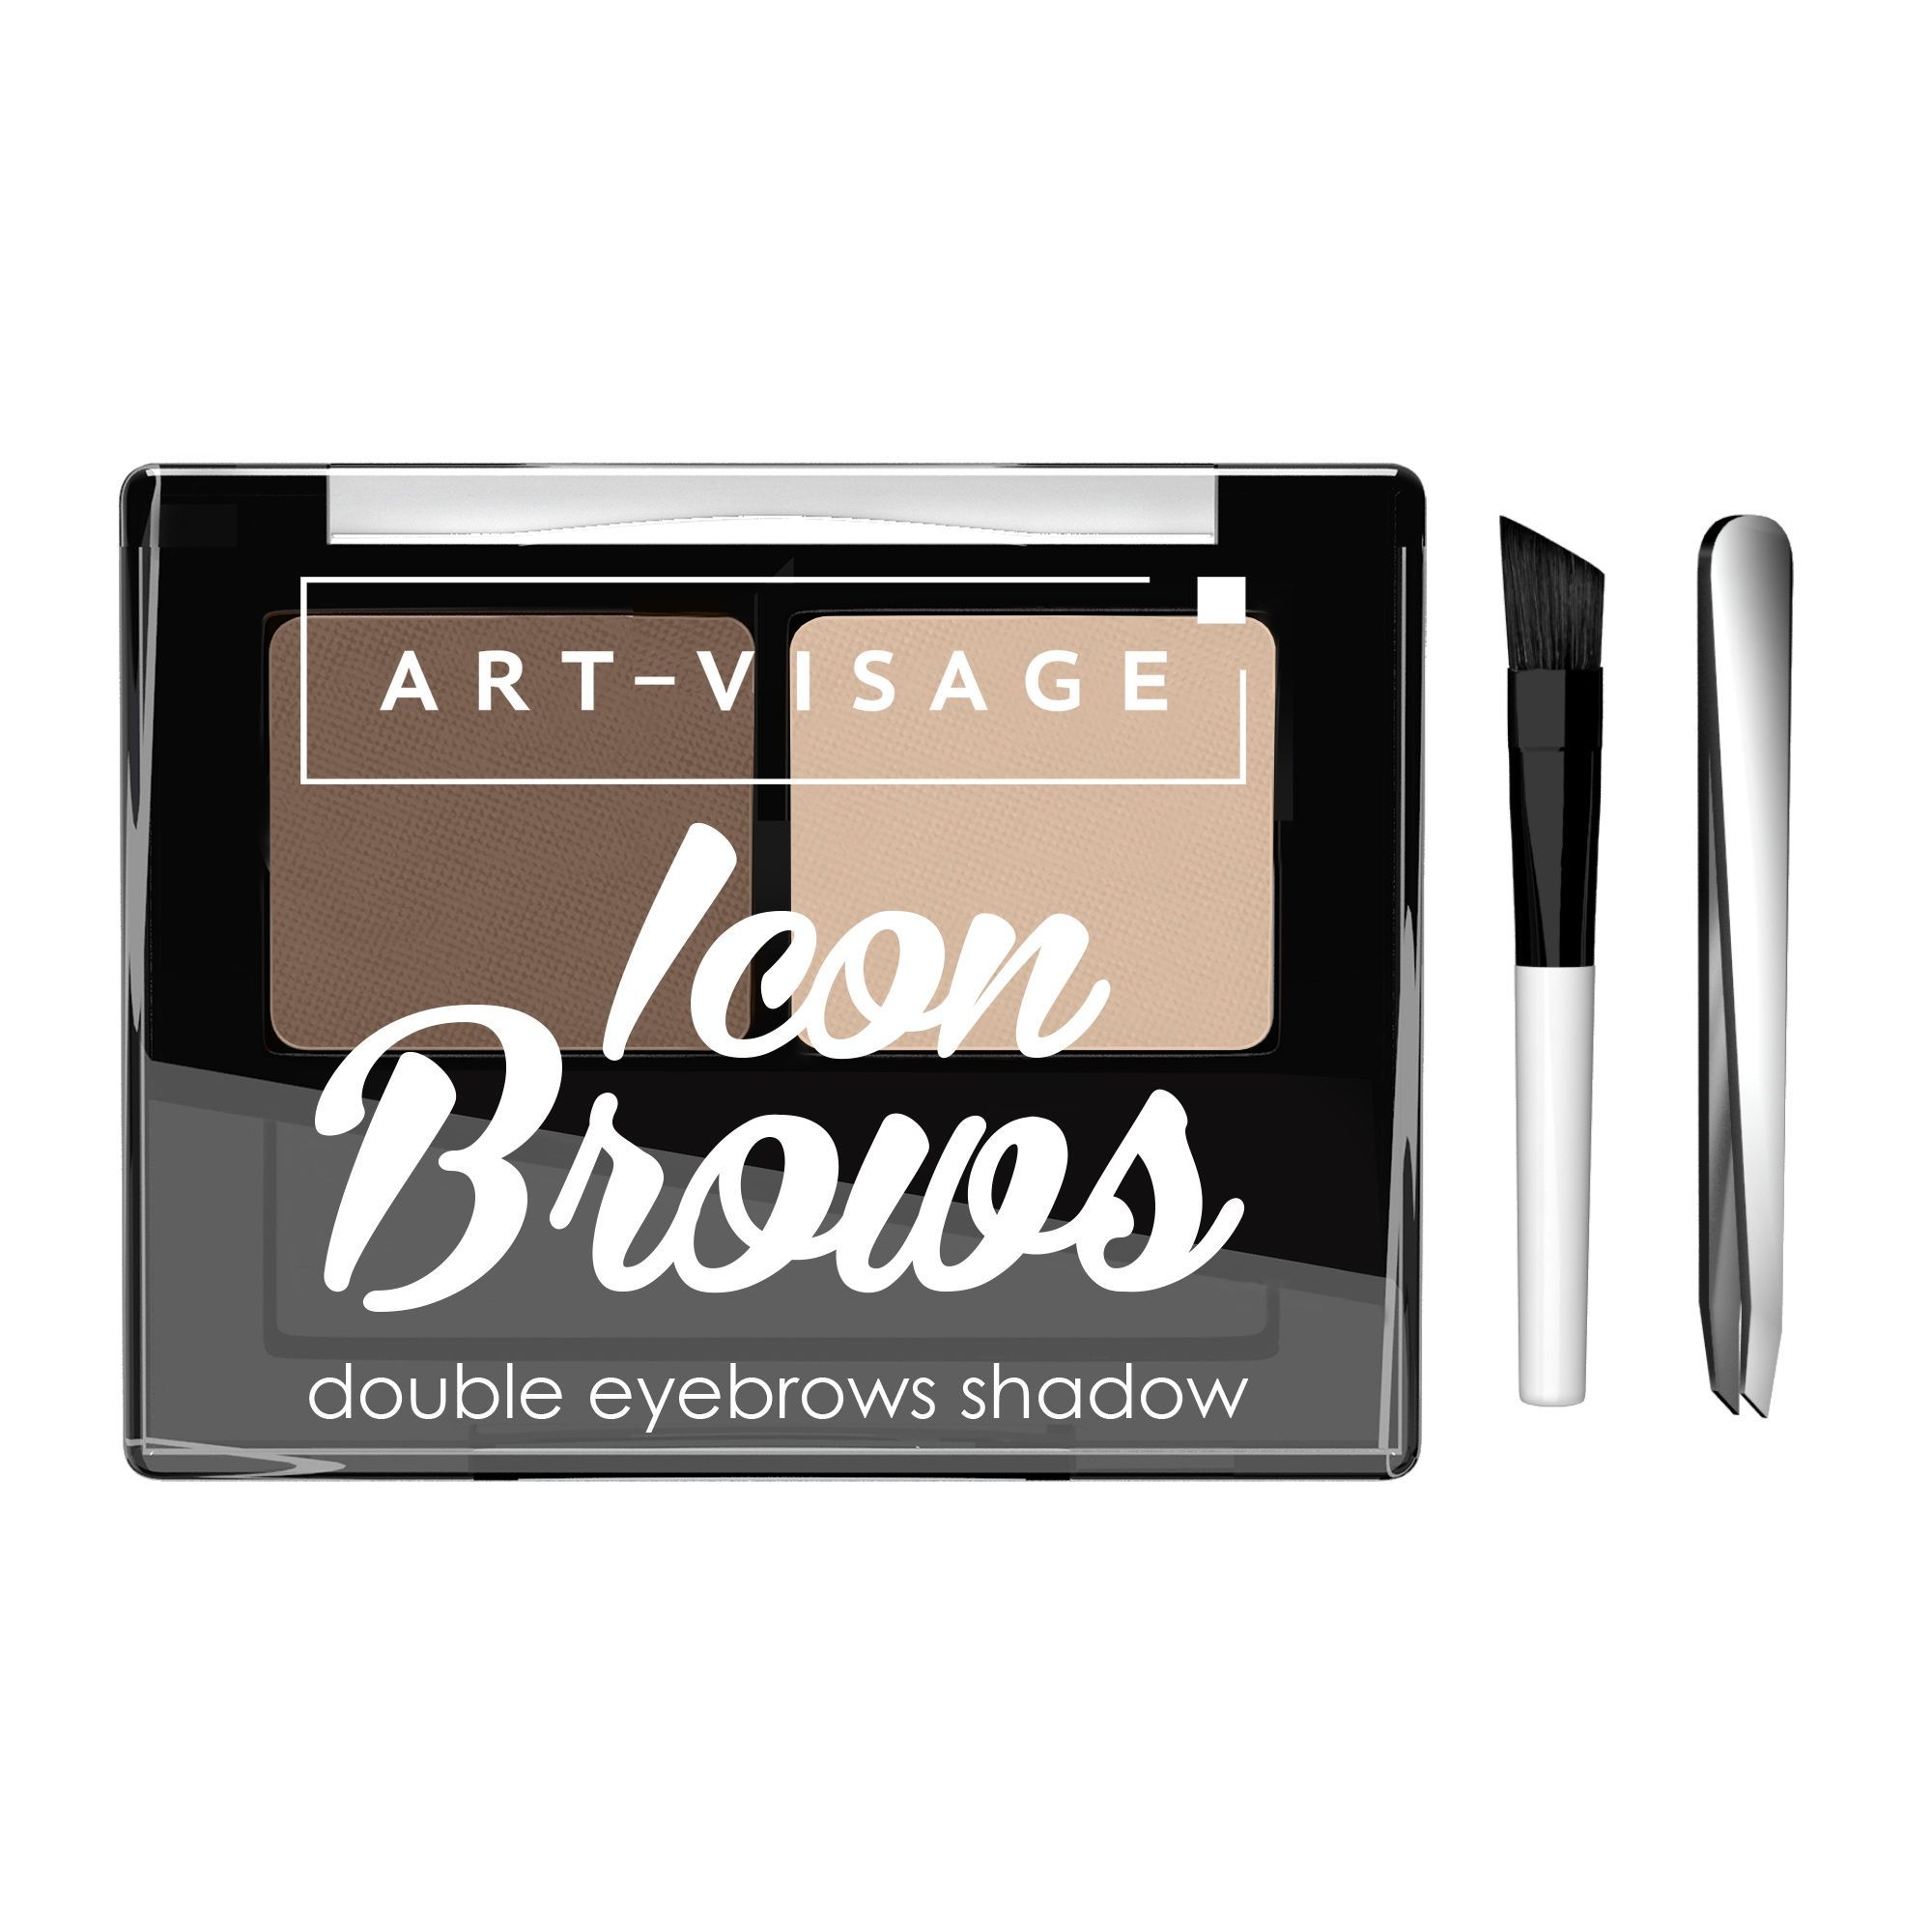 Art-Visage Двойные тени для бровей ICON BROWS 102